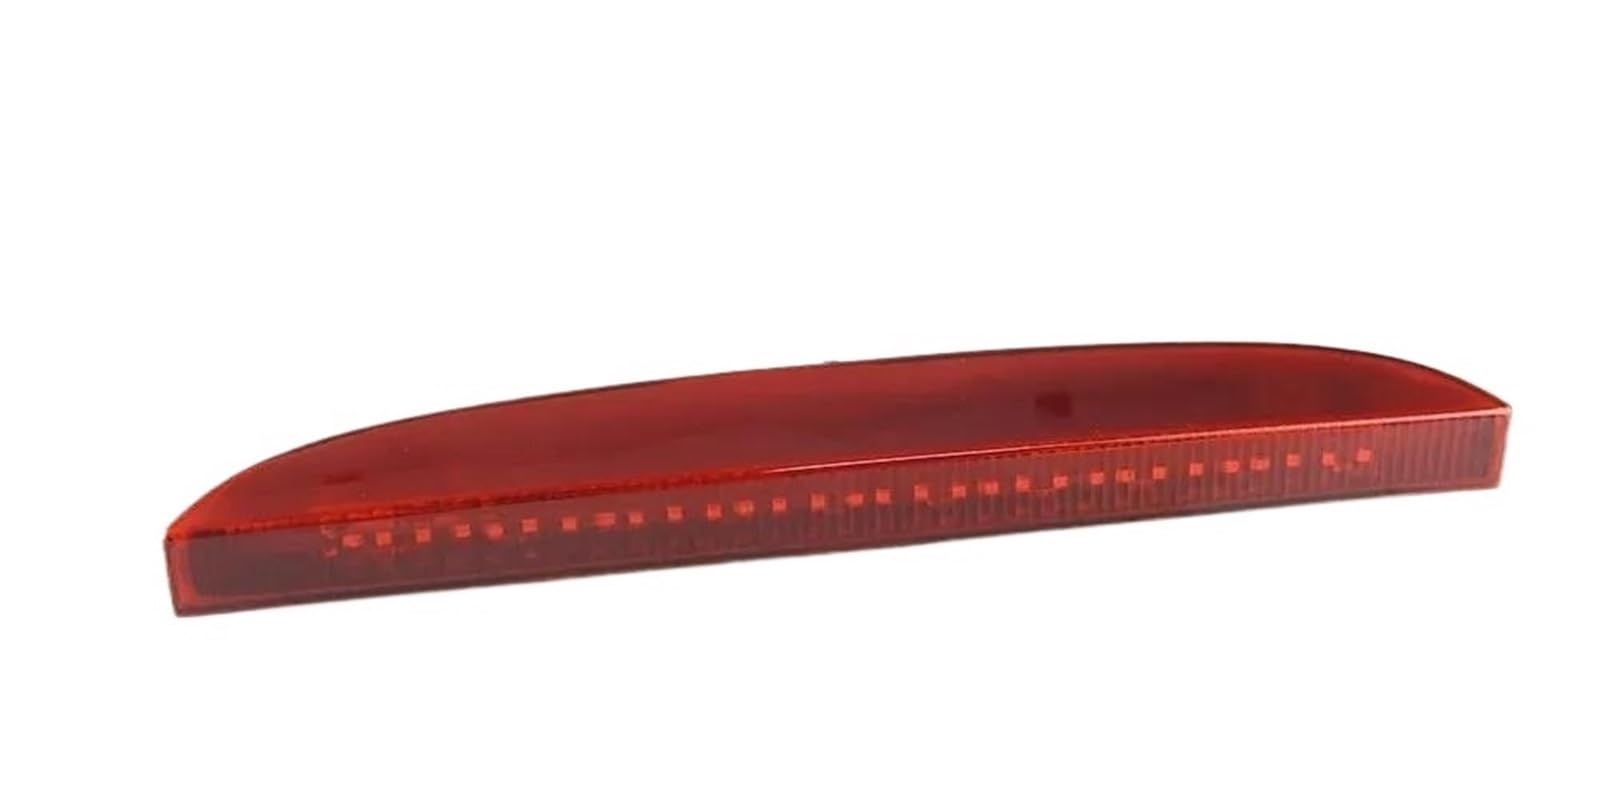 HONMER 7700410753 Drittes Bremslicht fürs Auto hoch montiert automatisches Bremslicht getönte rote Linse für R&enault für Clio II MK2 1998–2005 Auto drittes Bremslicht(Red) von HONMER